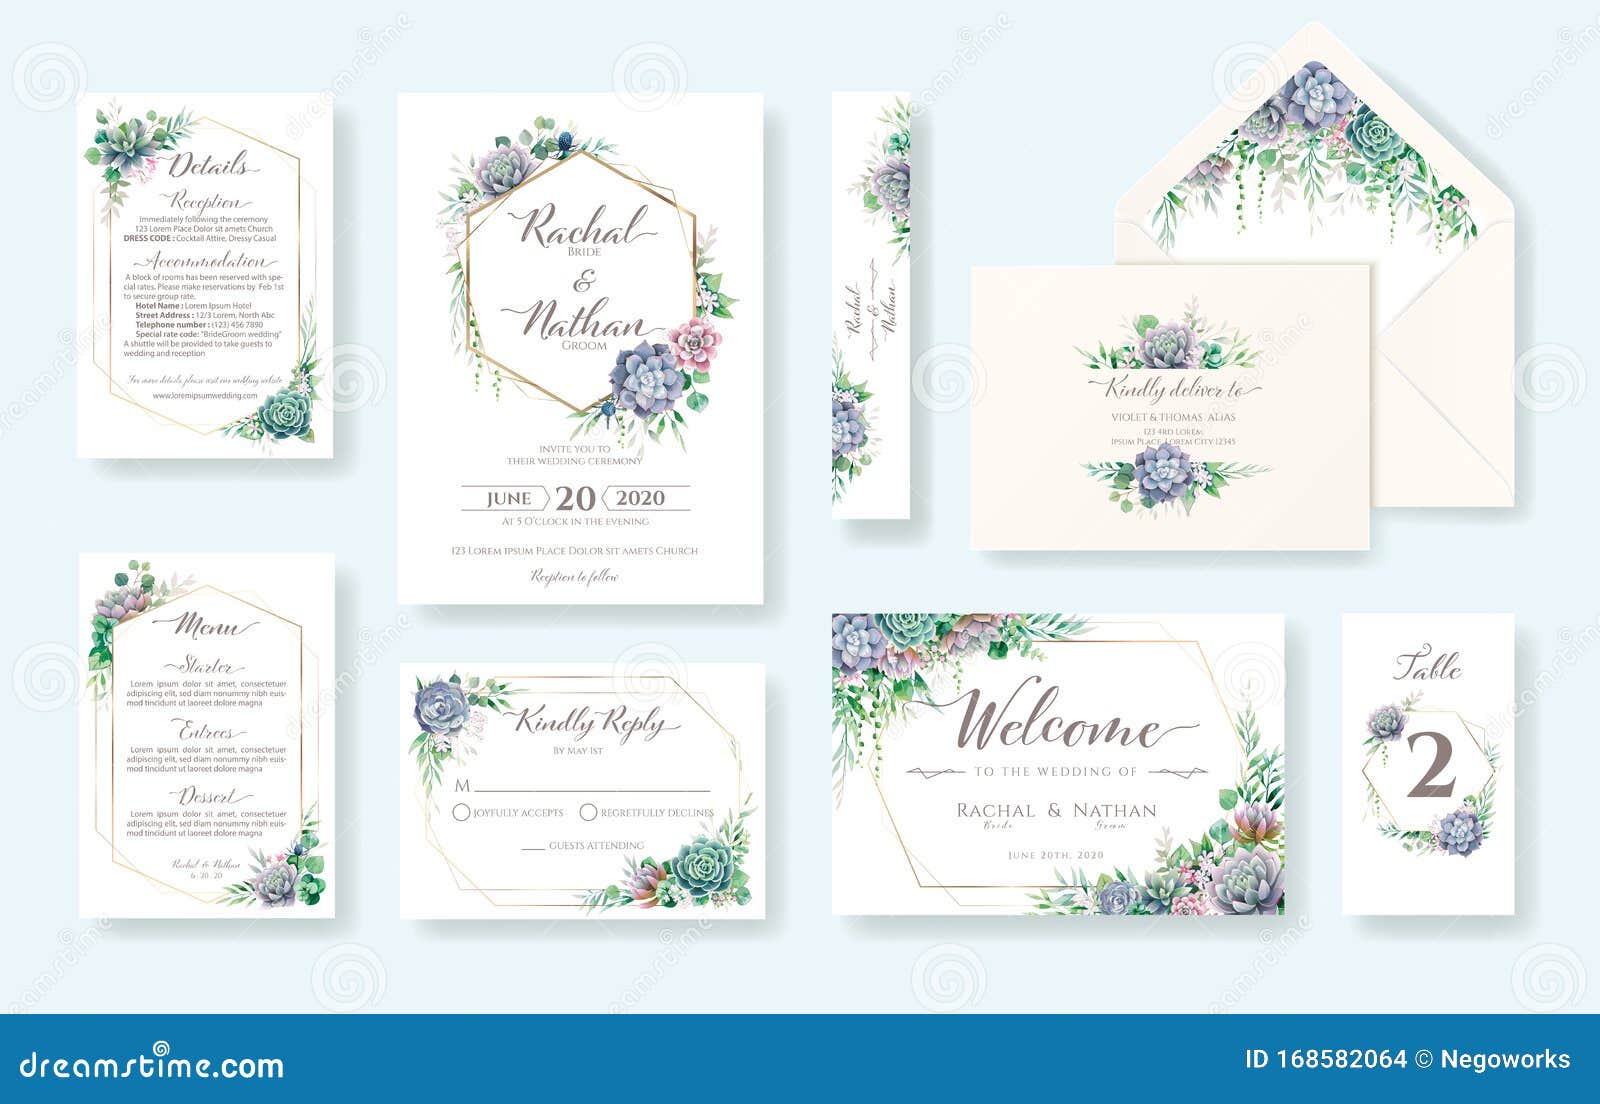 set of floral wedding invitation card, invite, rsvp, details, thank you, table number, menu, envelope address template. succulent